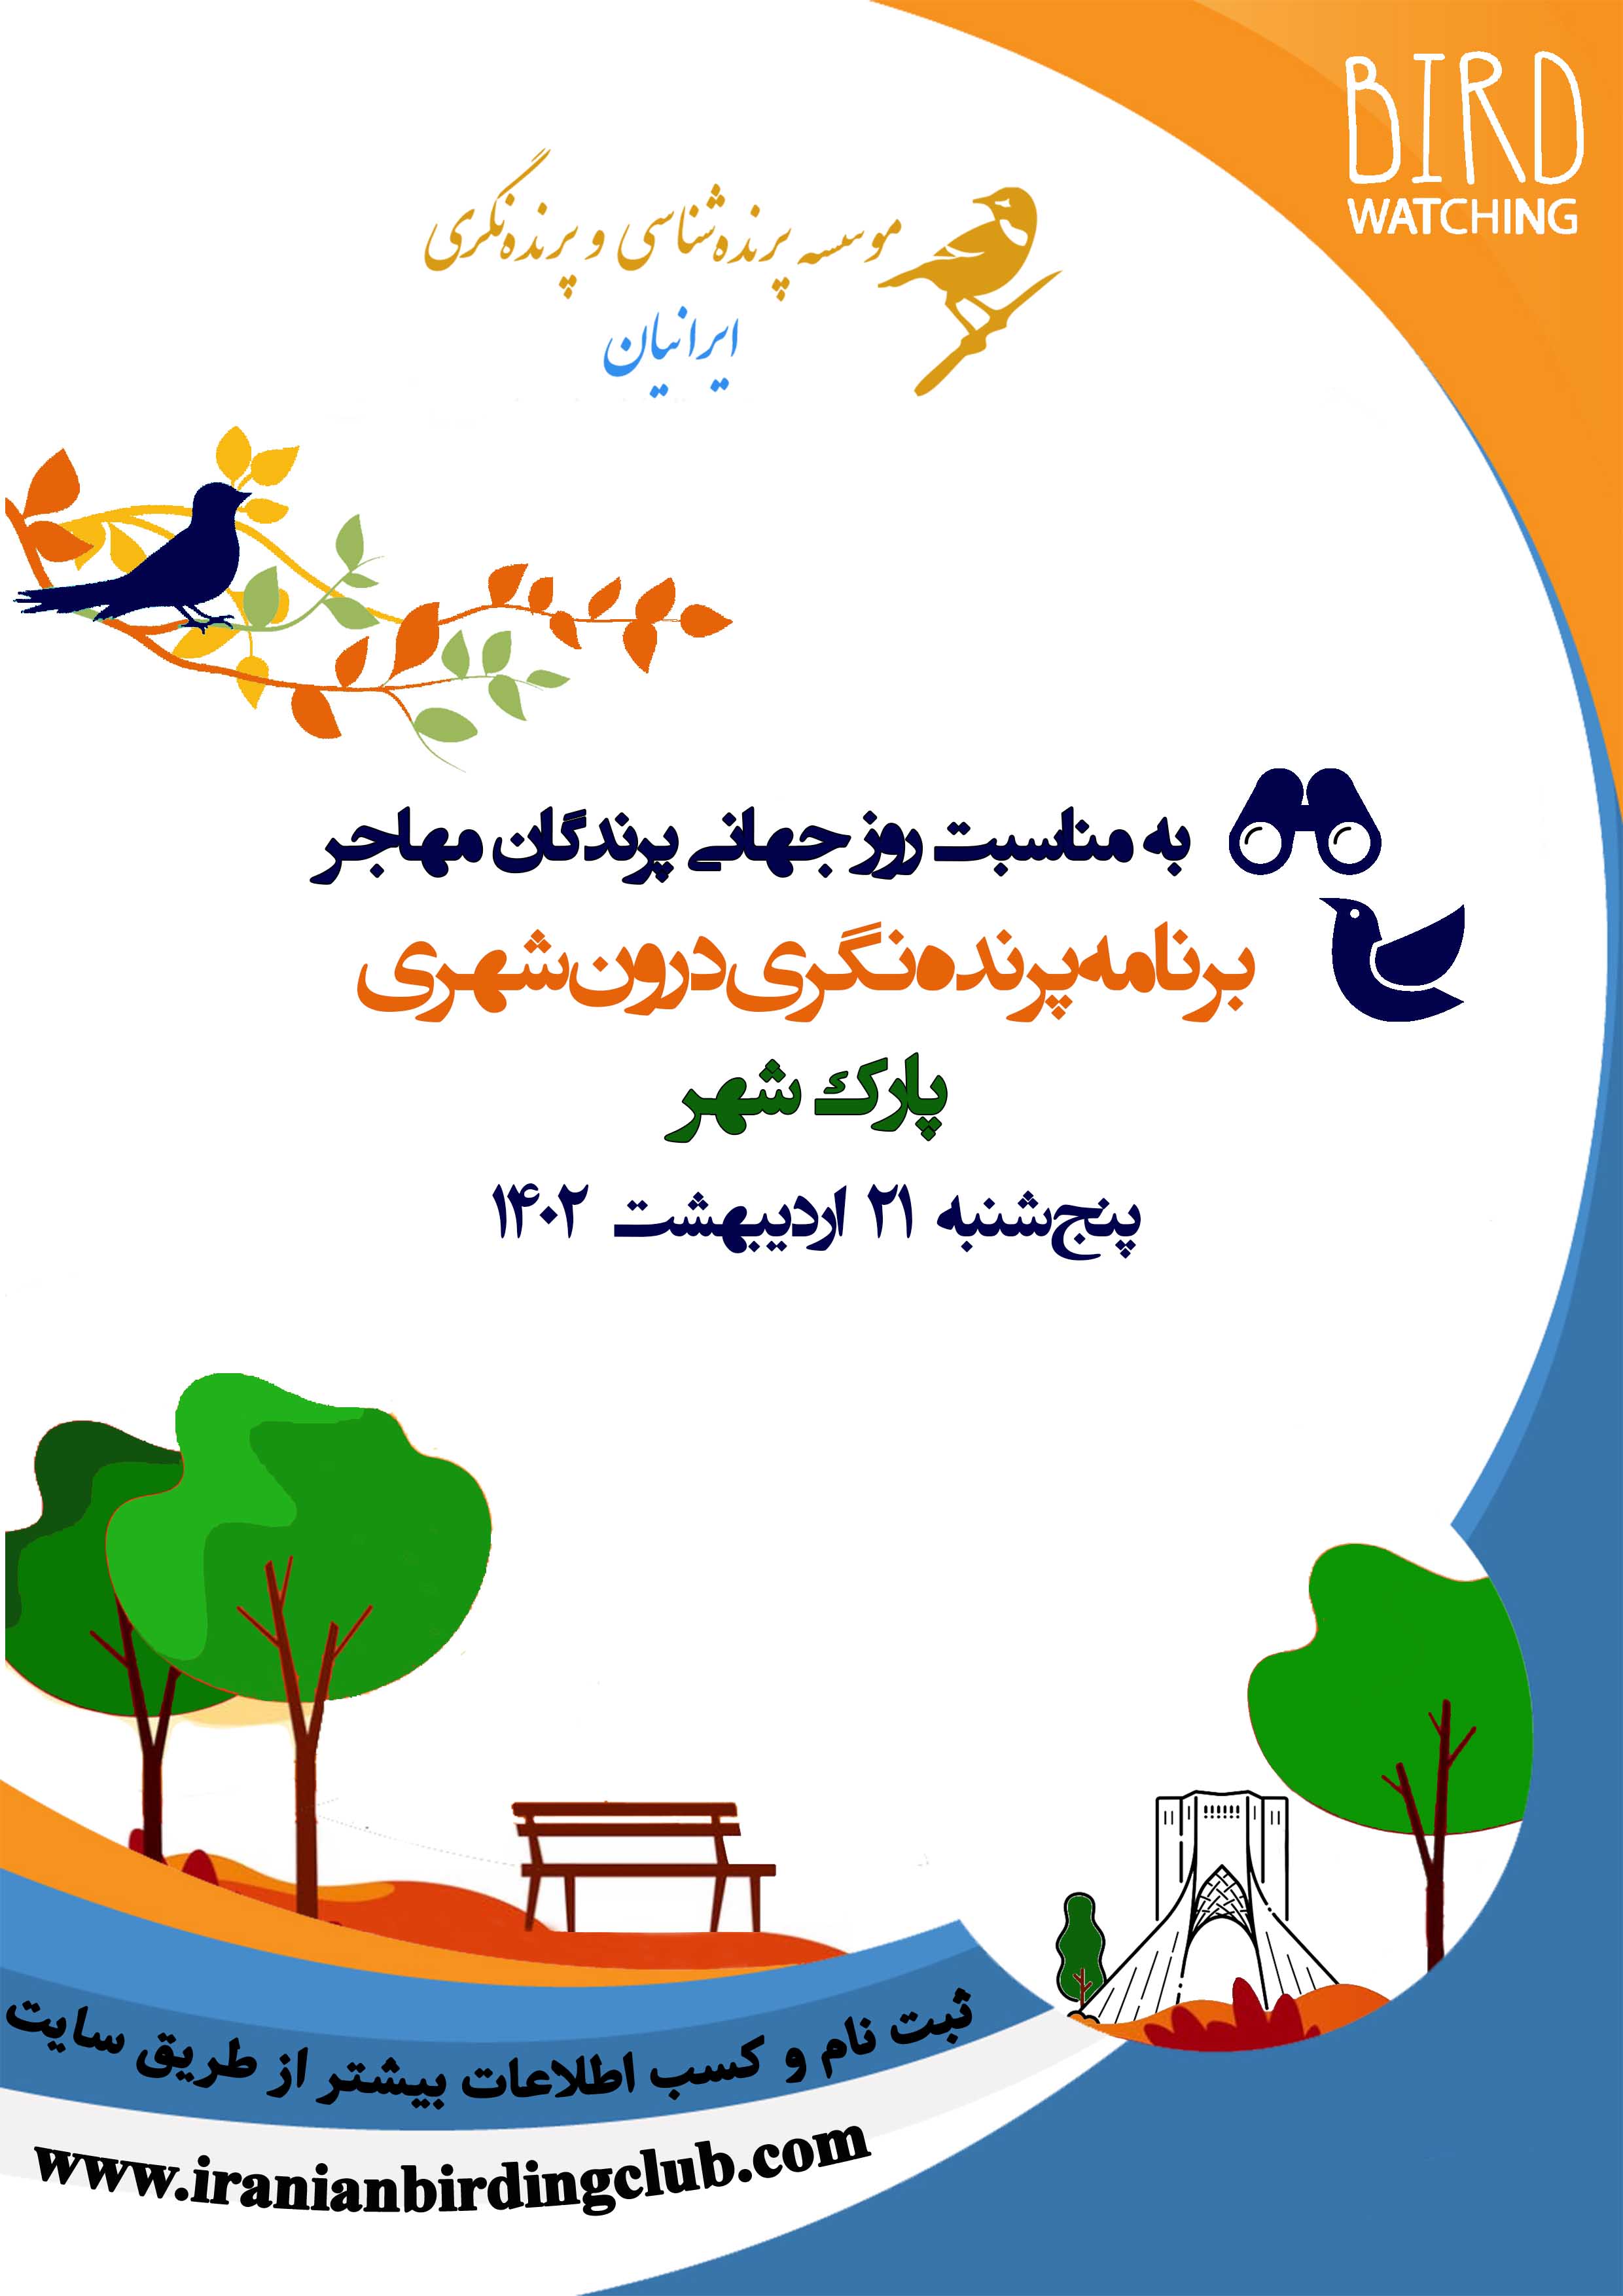 Shahr Park birdwatching Poster